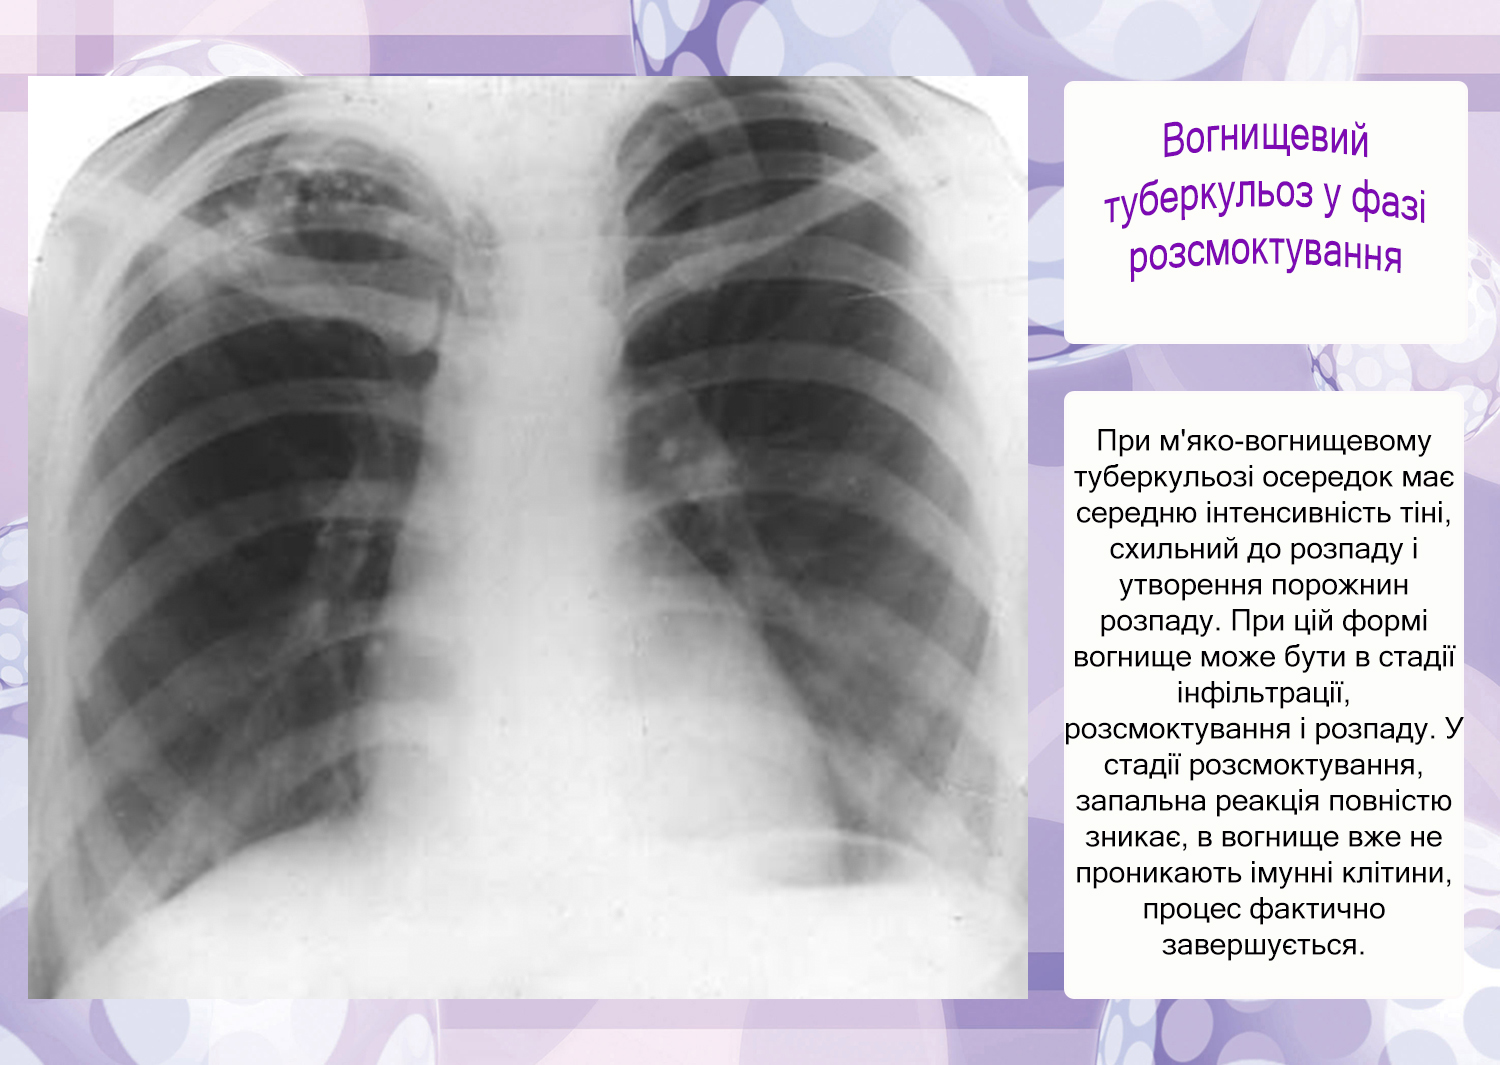 Верхушки легких тени. Инфильтративный туберкулез рентген. Очаговый туберкулез в фазе инфильтрации. Рентгенологическая картина очагового туберкулеза. Казеозная пневмония инфильтрат.